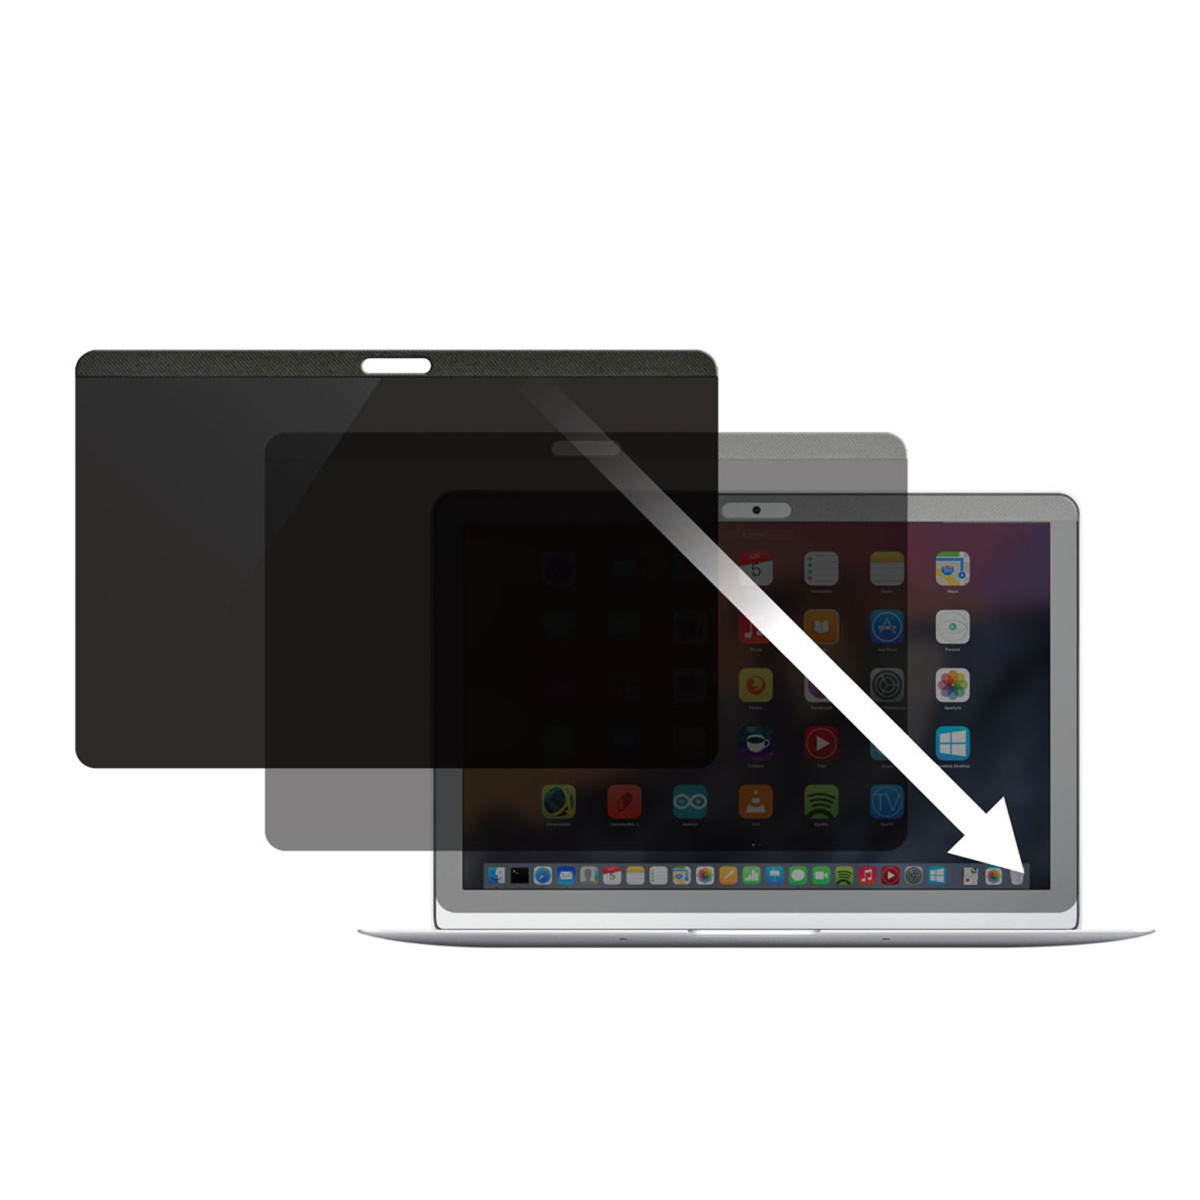 Privacy Screen - MacBook -13in